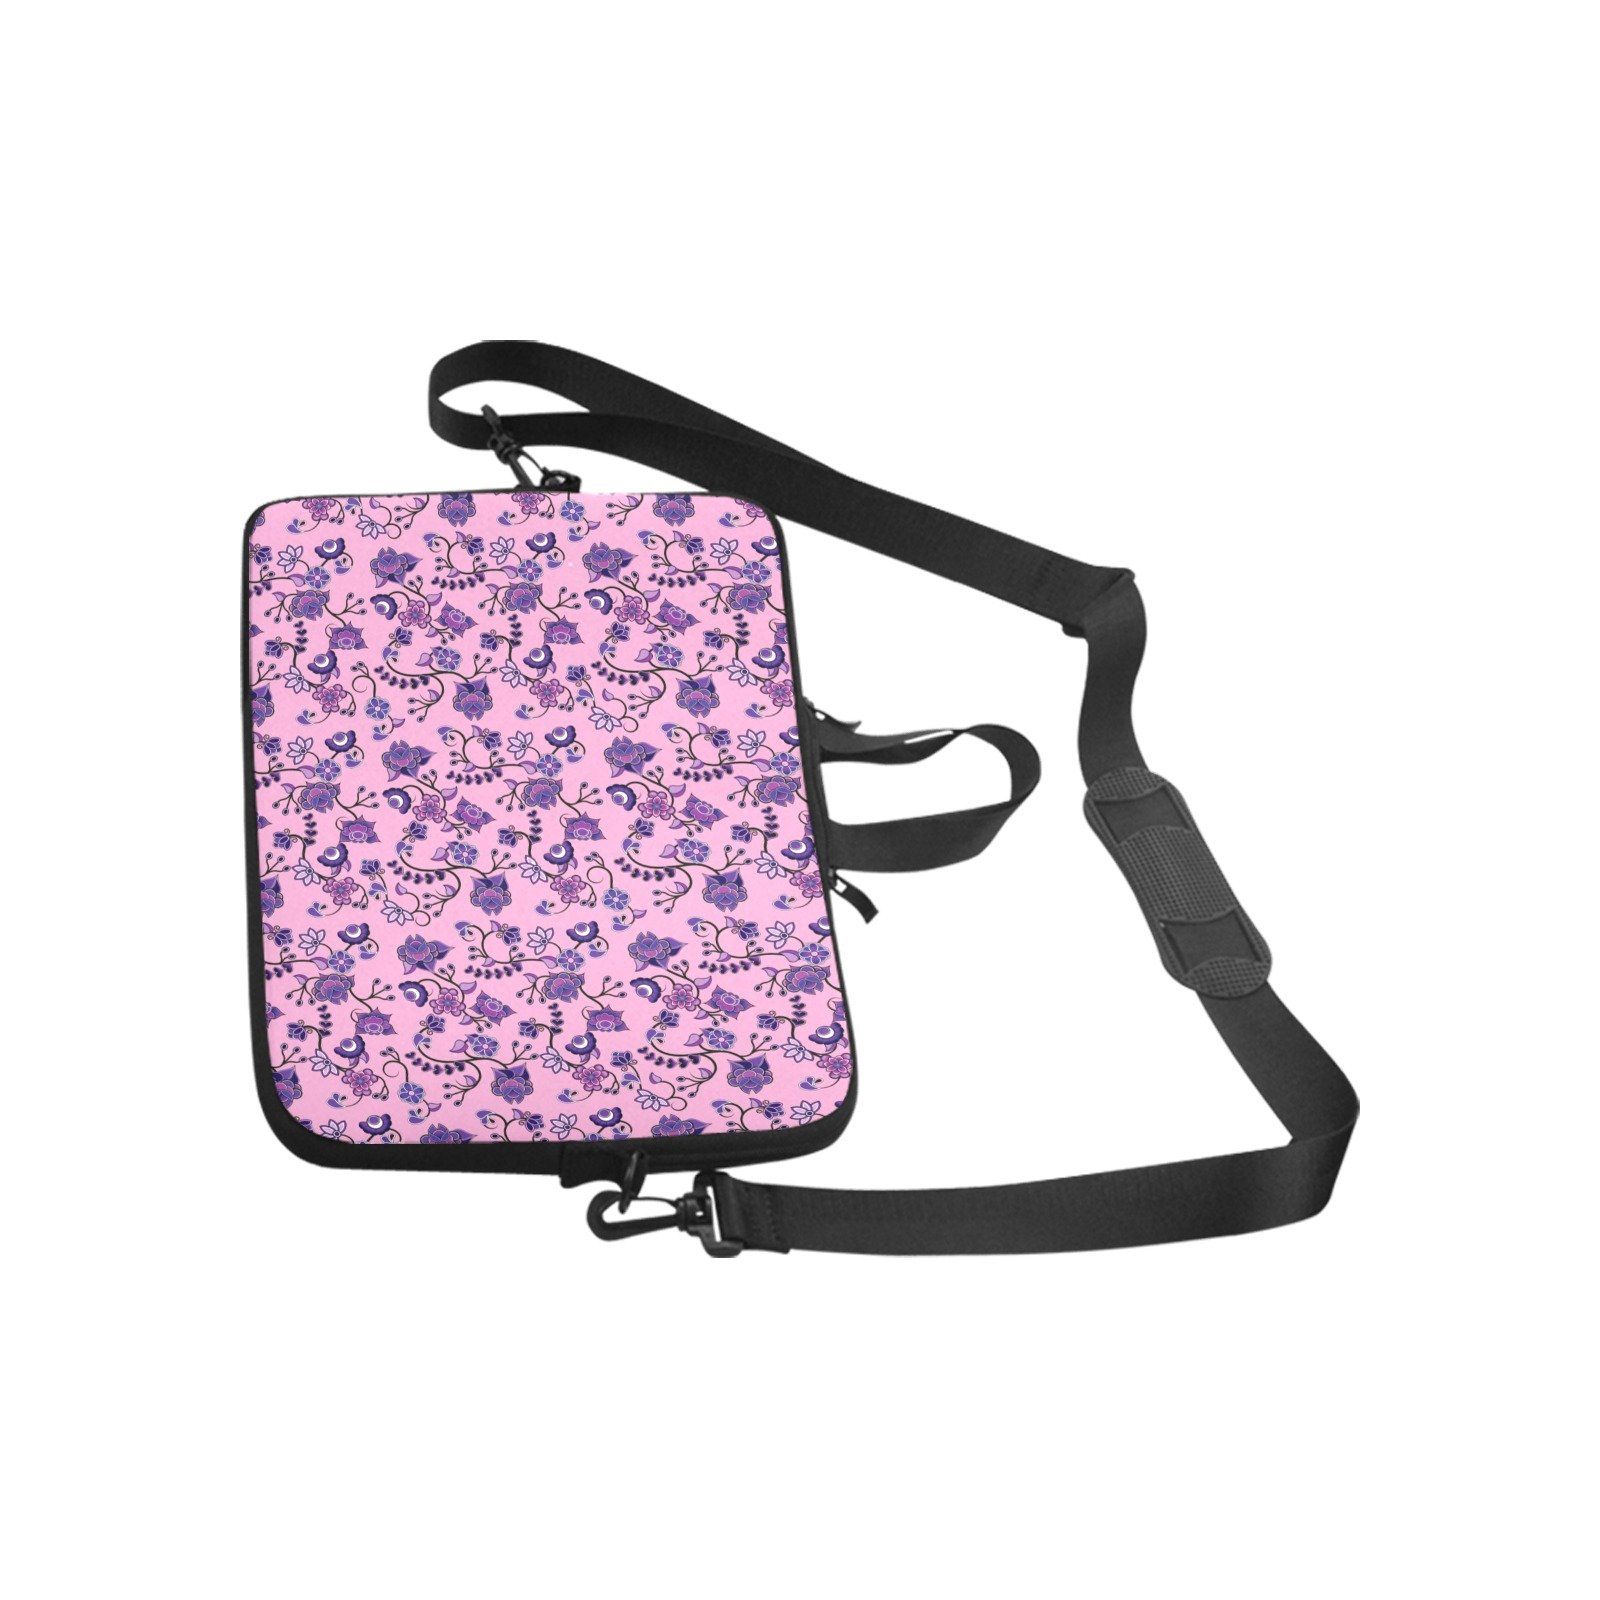 Purple Floral Amour Laptop Handbags 14" bag e-joyer 